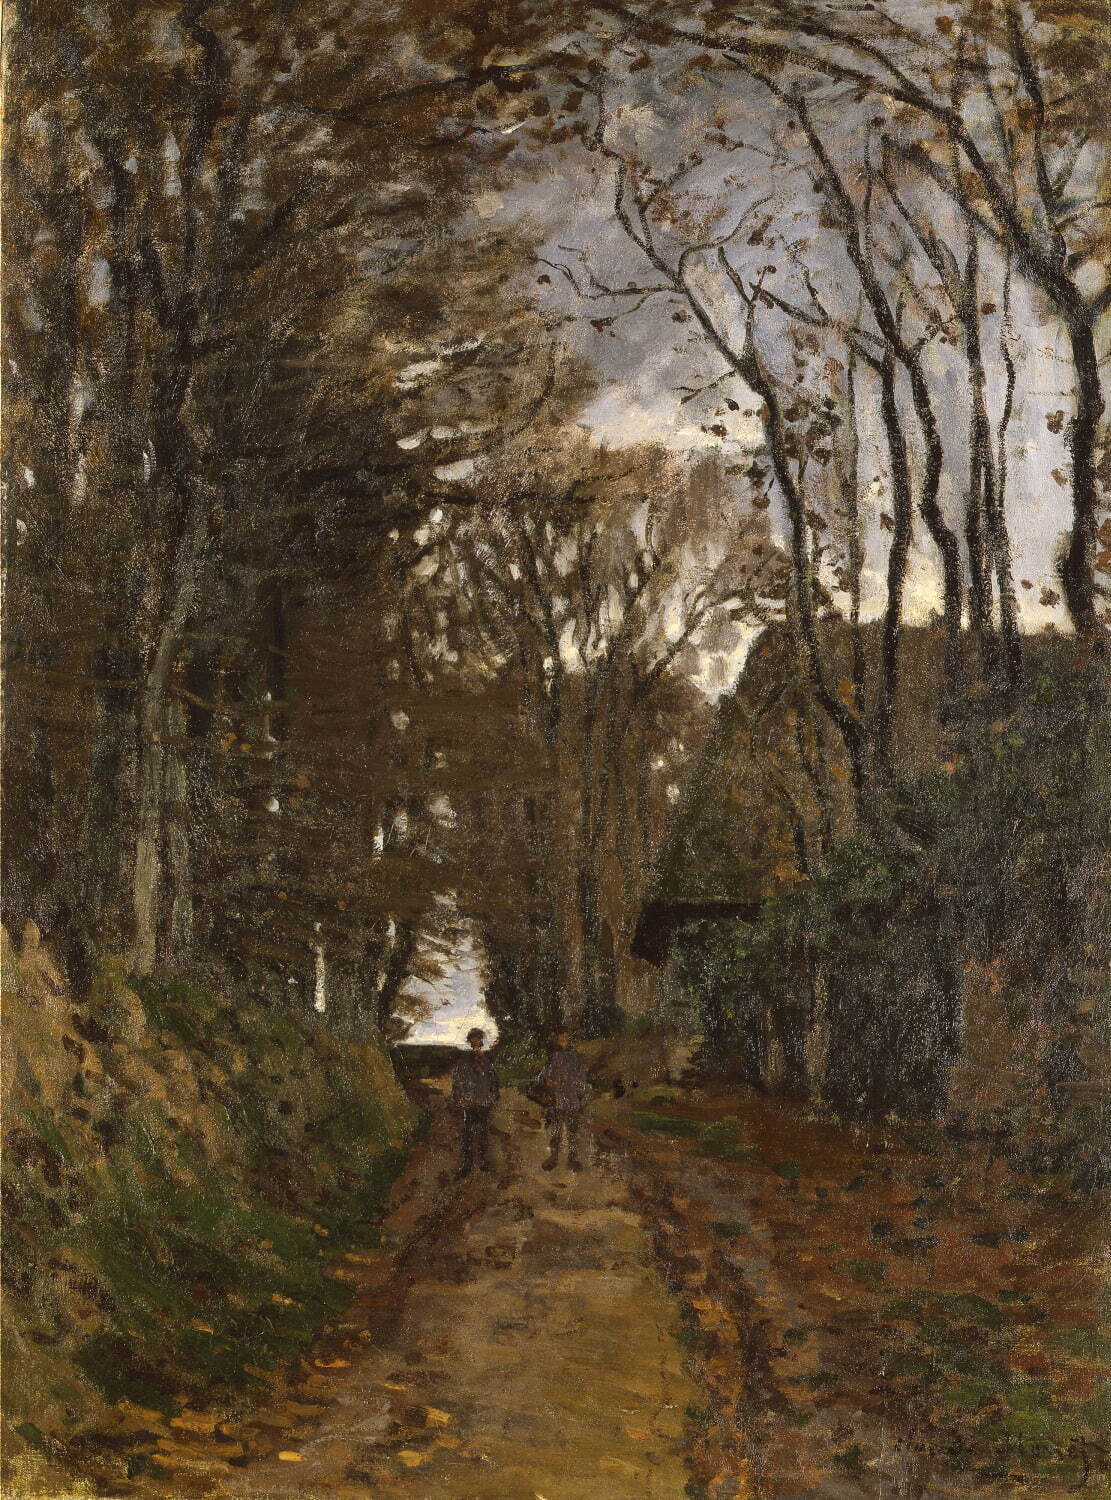 クロード・モネ《ノルマンディの田舎道》1868年